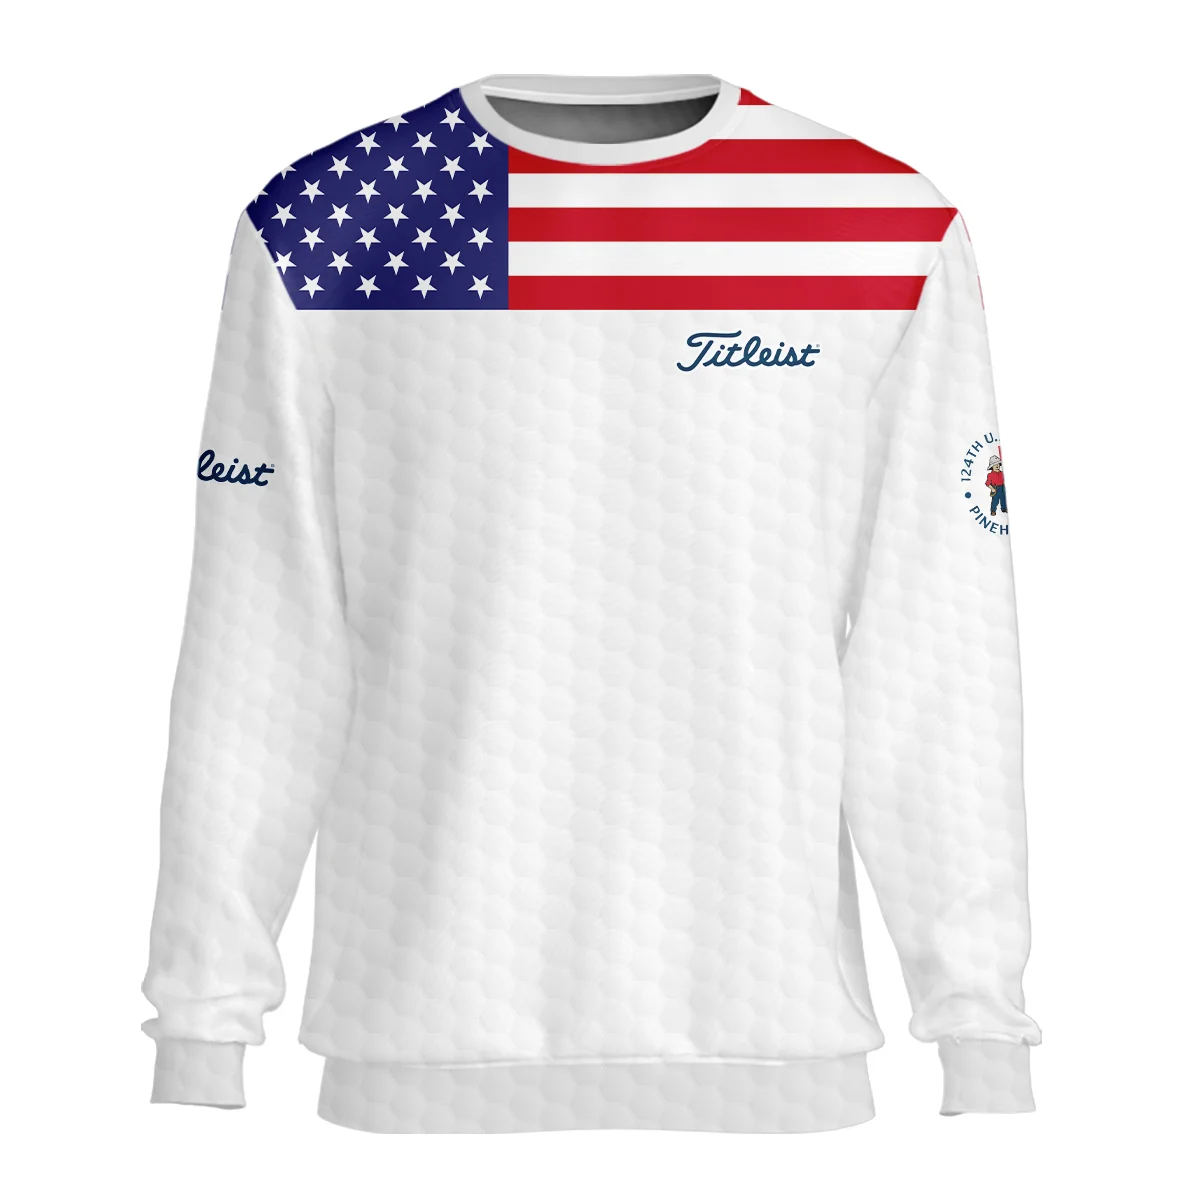 Titleist 124th U.S. Open Pinehurst Zipper Polo Shirt USA Flag Golf Pattern All Over Print Zipper Polo Shirt For Men